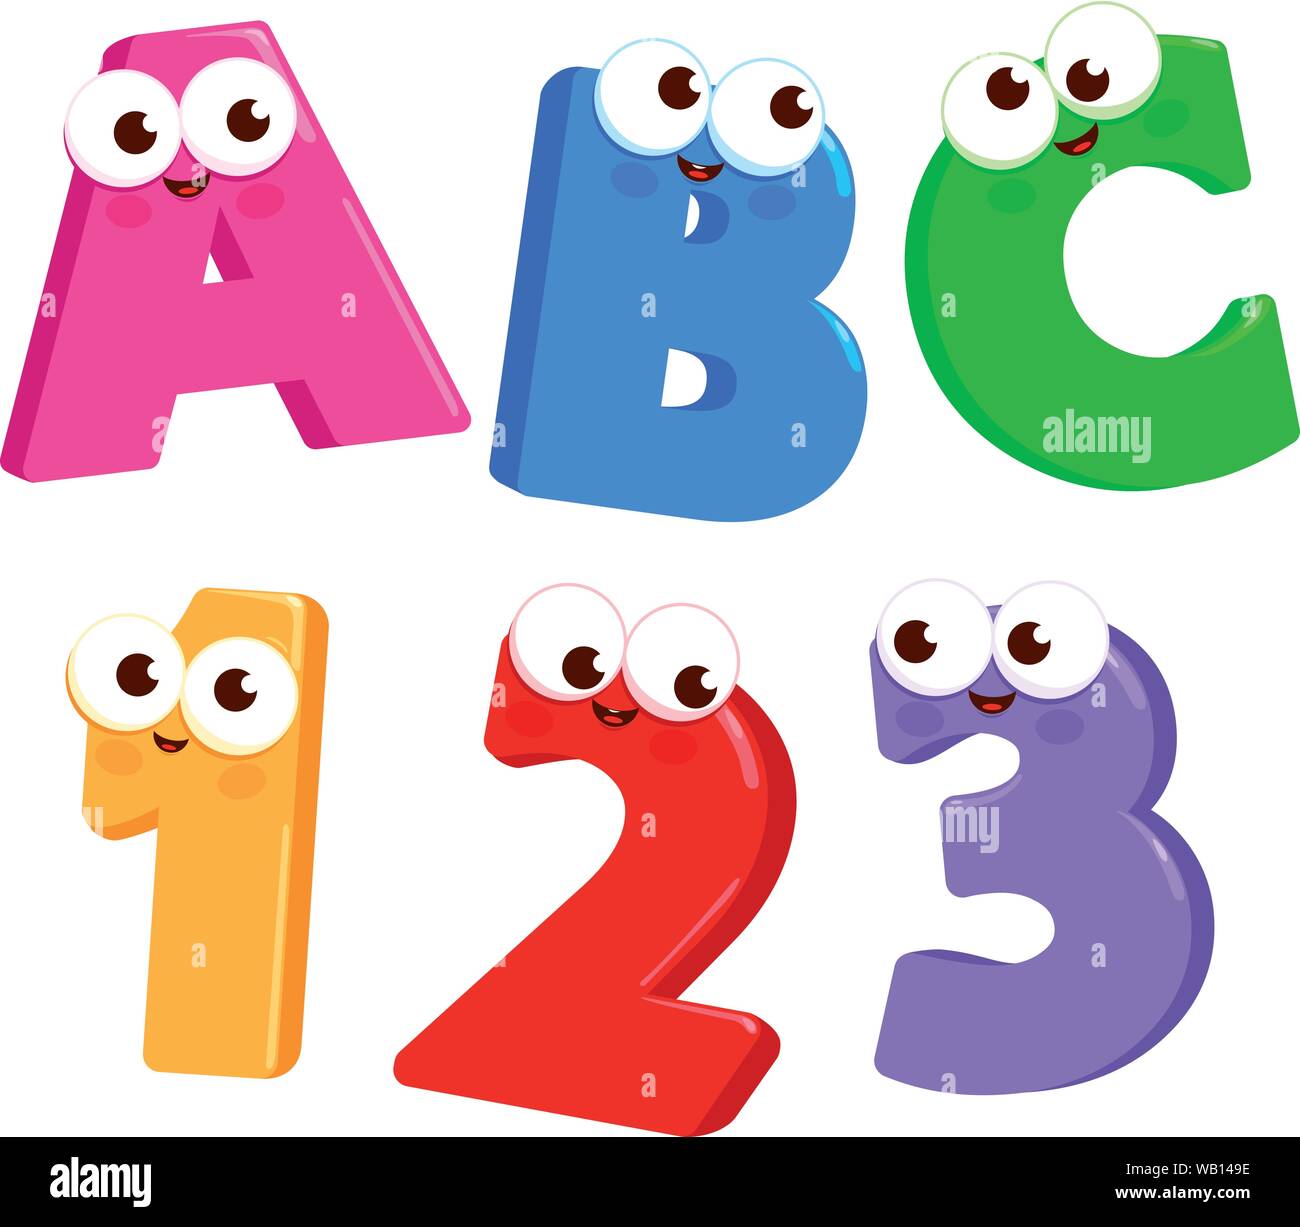 Cartoon Buchstaben ABC und zahlen 123 mit netten und lustigen Gesichter. Vector Illustration Stock Vektor